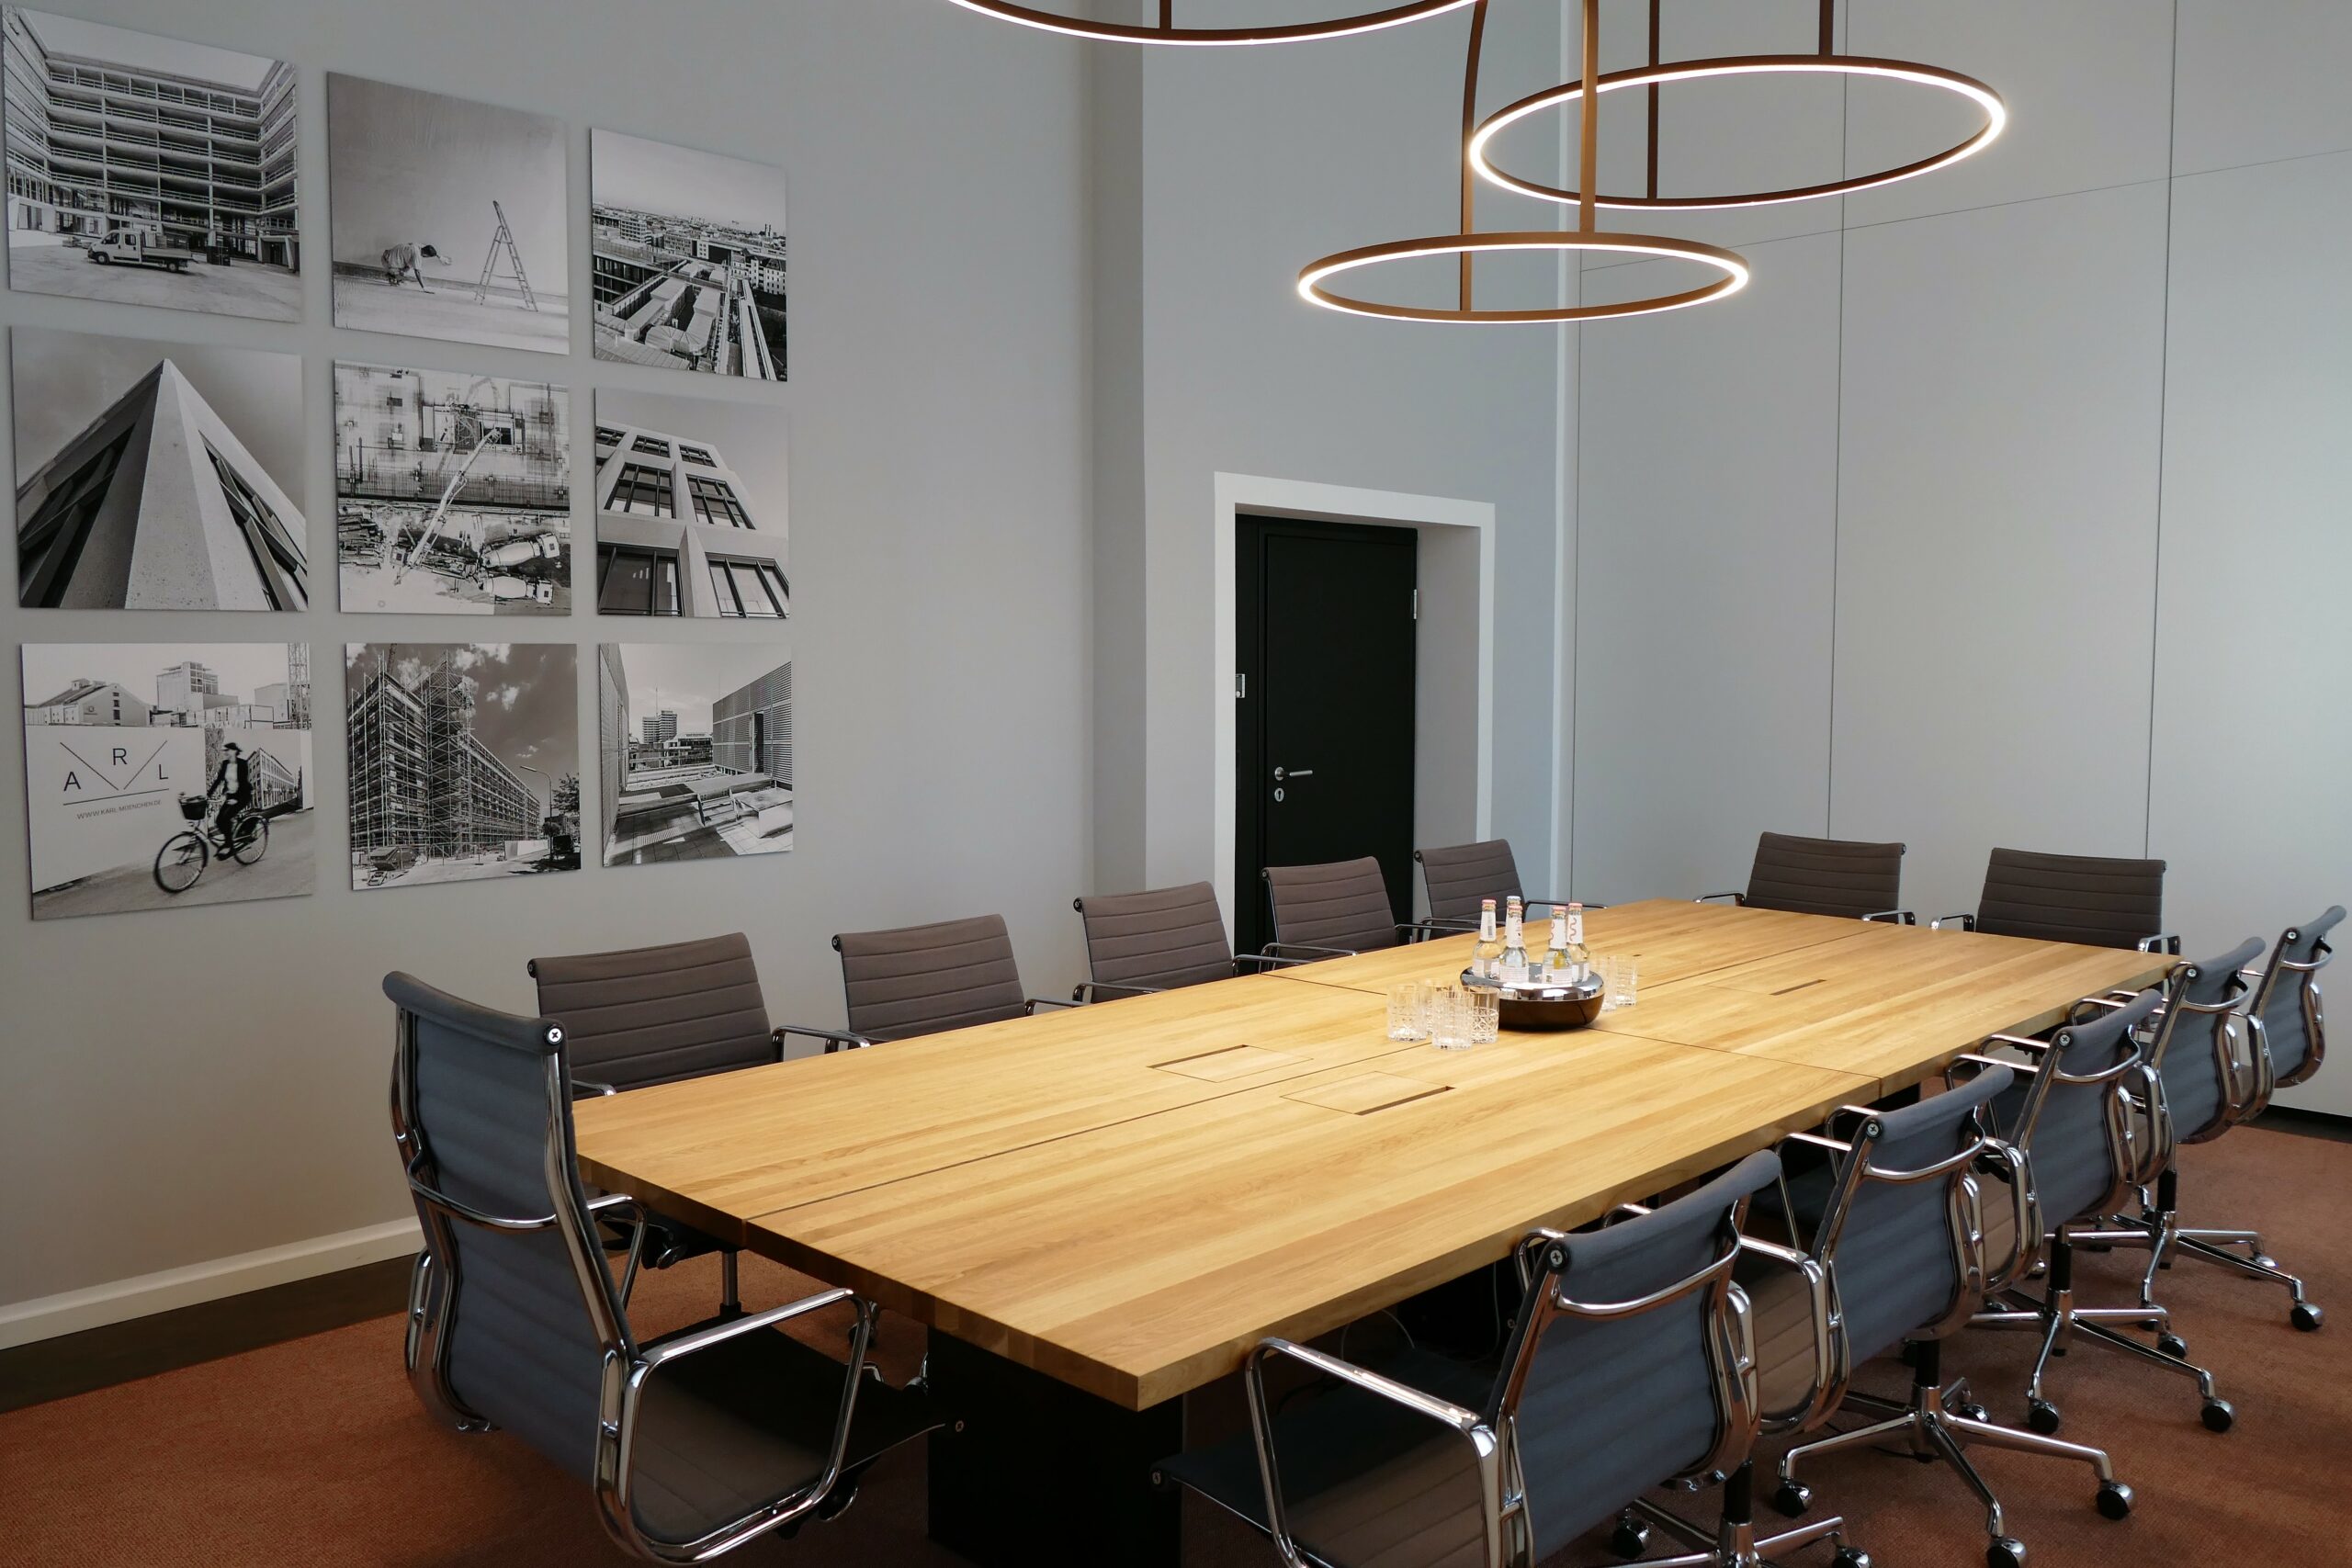 Konferenzraum, böhmler Einrichtungshaus München, Luxus-Einrichtung, Objekt einrichten, Büroeinrichtung